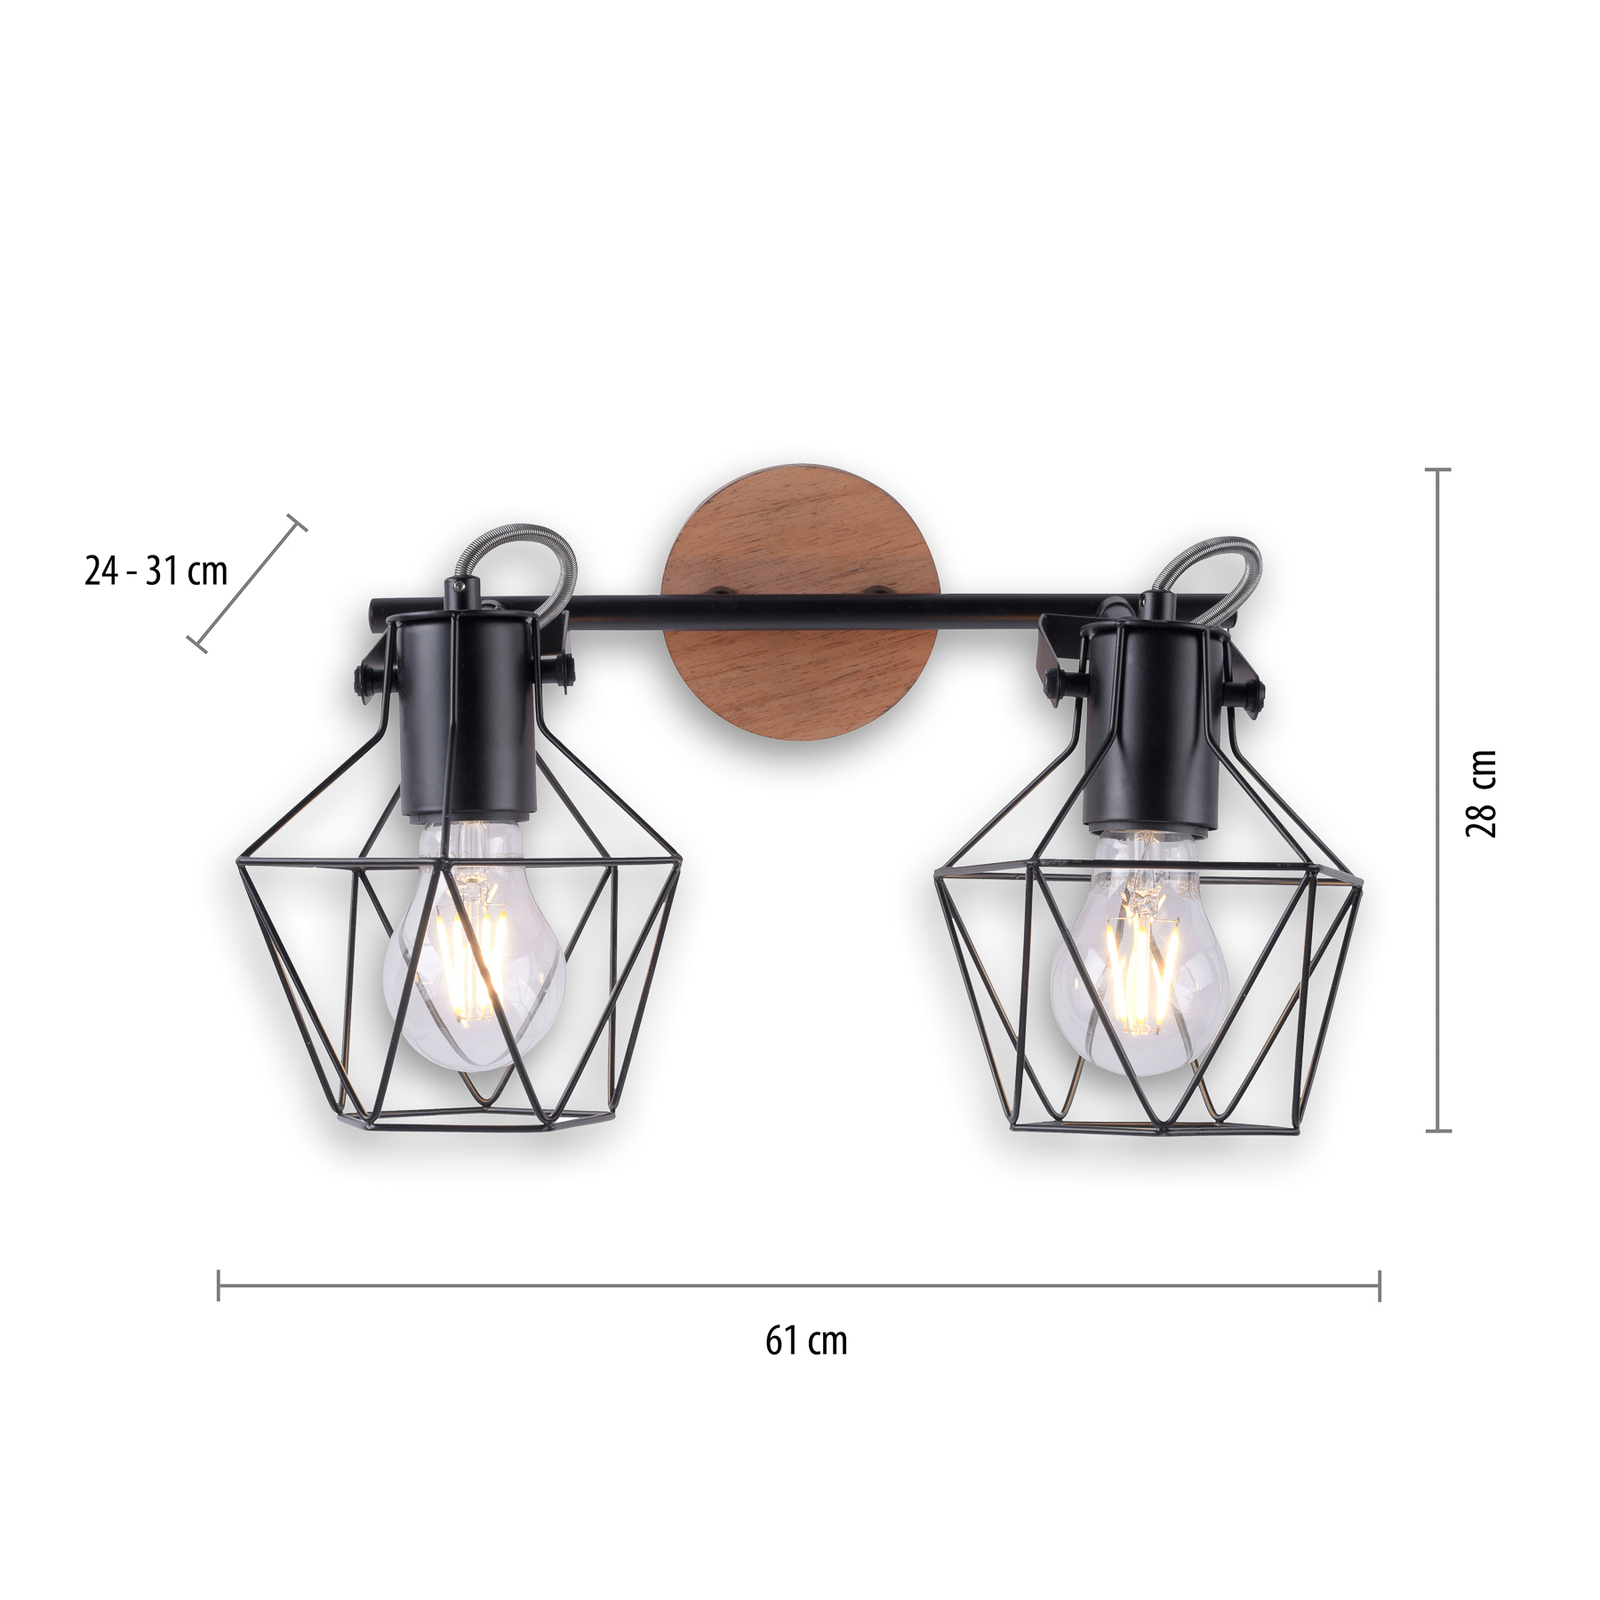 Ceiling lamp Jaro adjustable black/wood 2-bulb